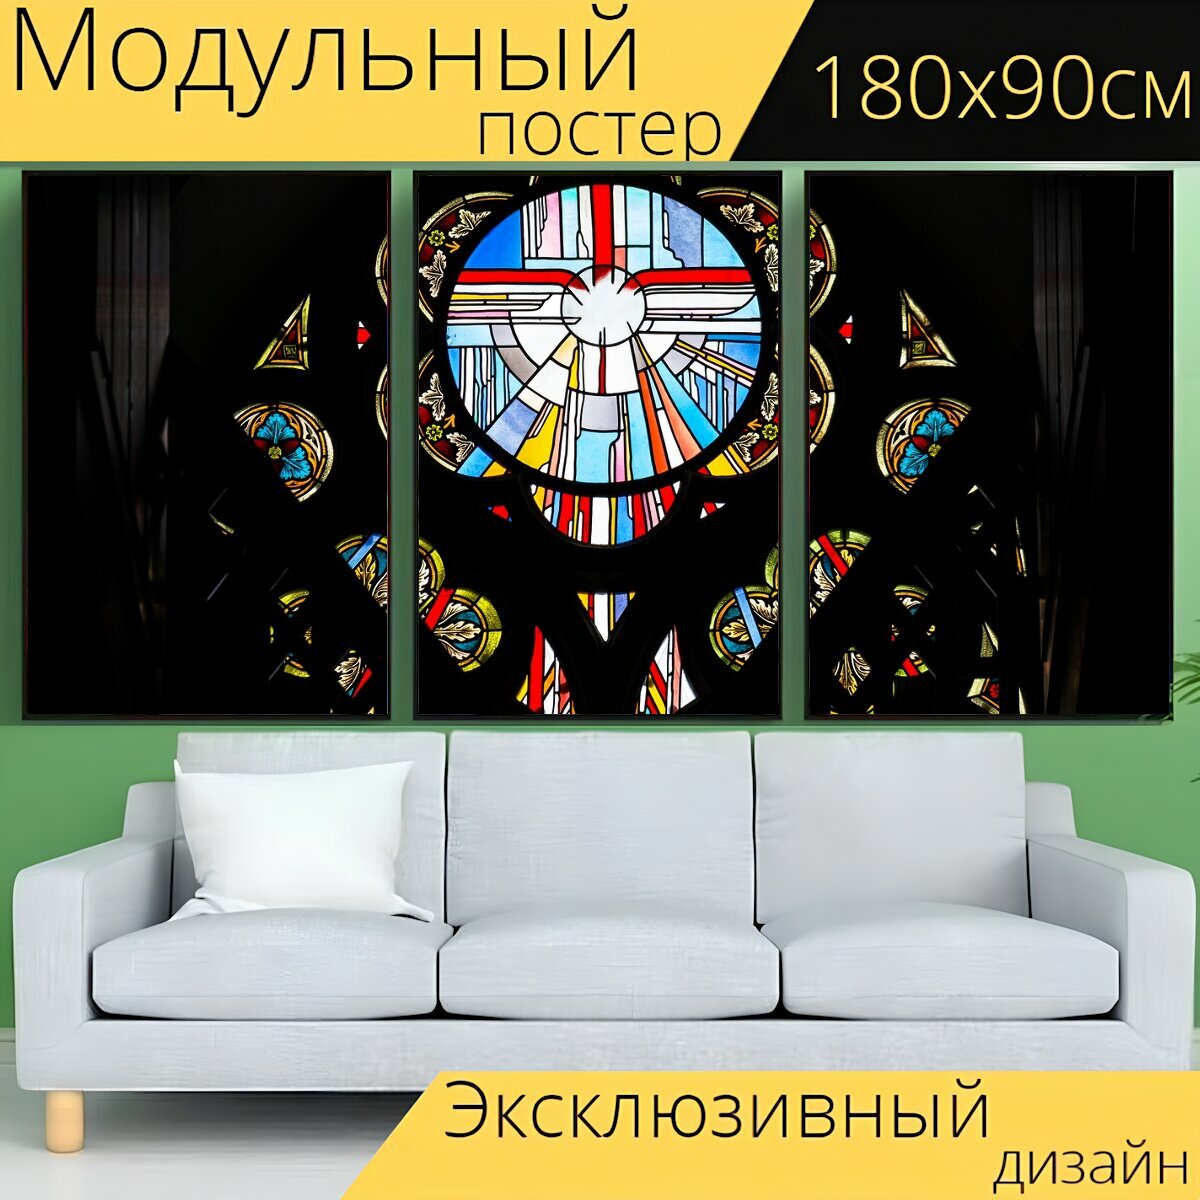 Модульный постер "Церковное окно, окно, витраж" 180 x 90 см. для интерьера